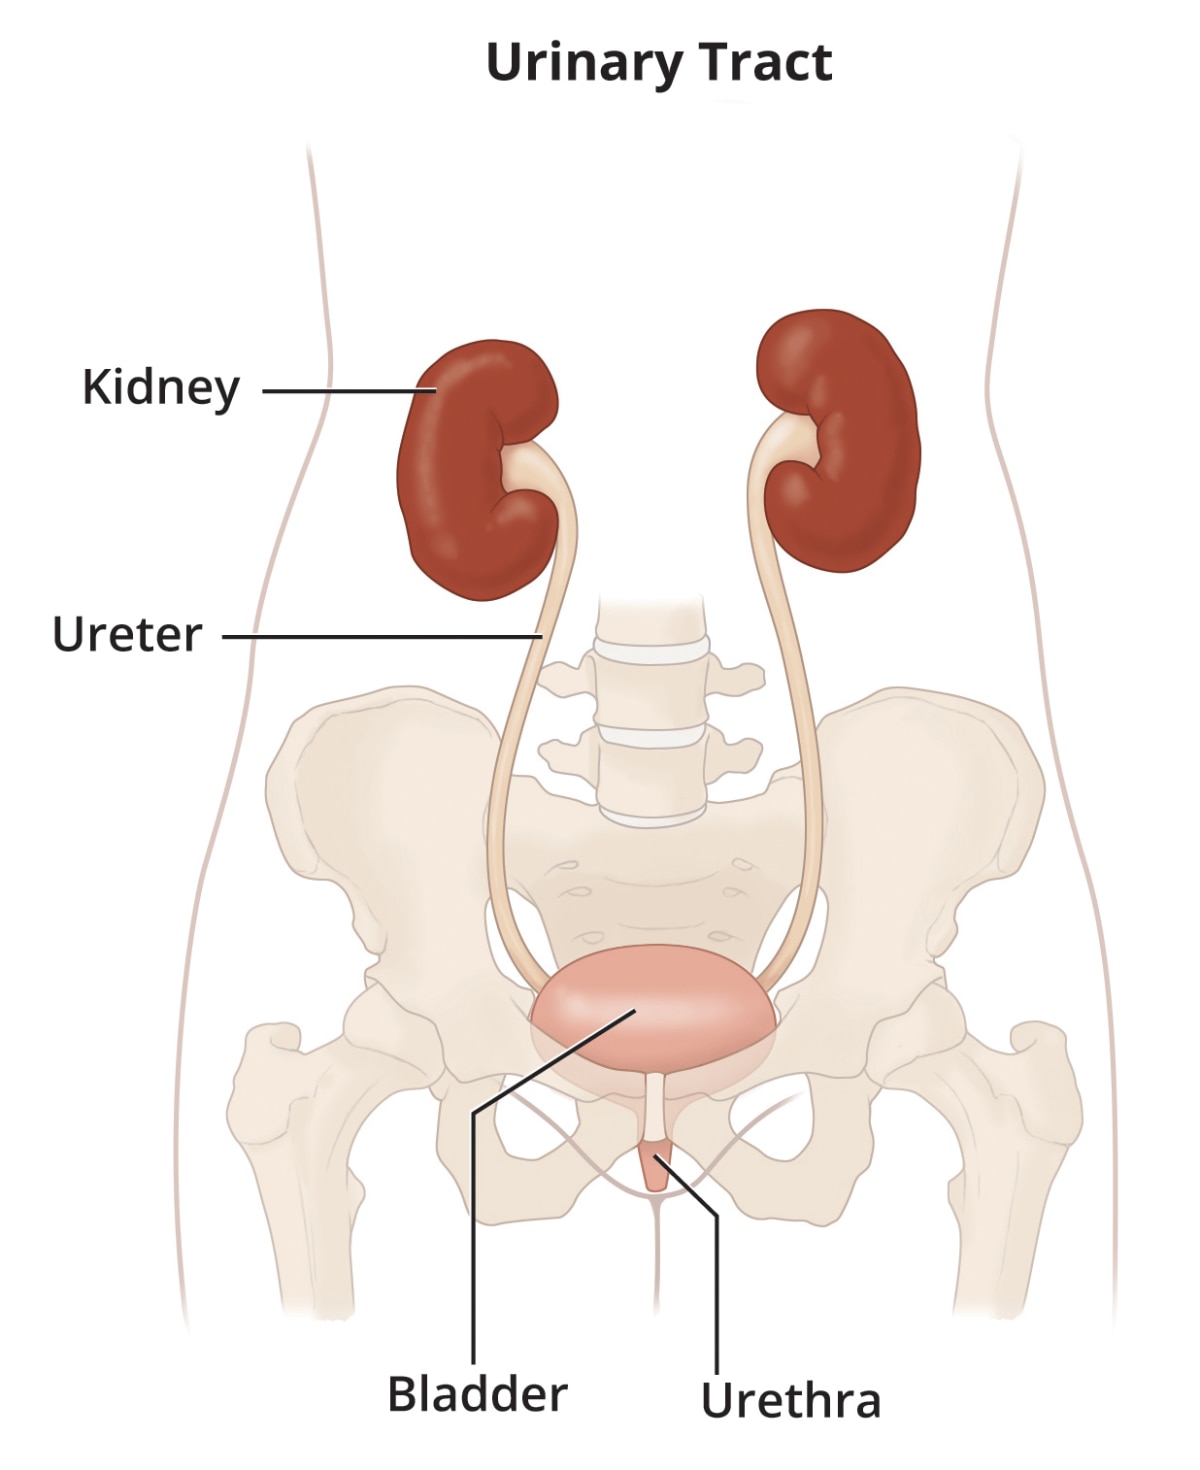 Description of urinary system